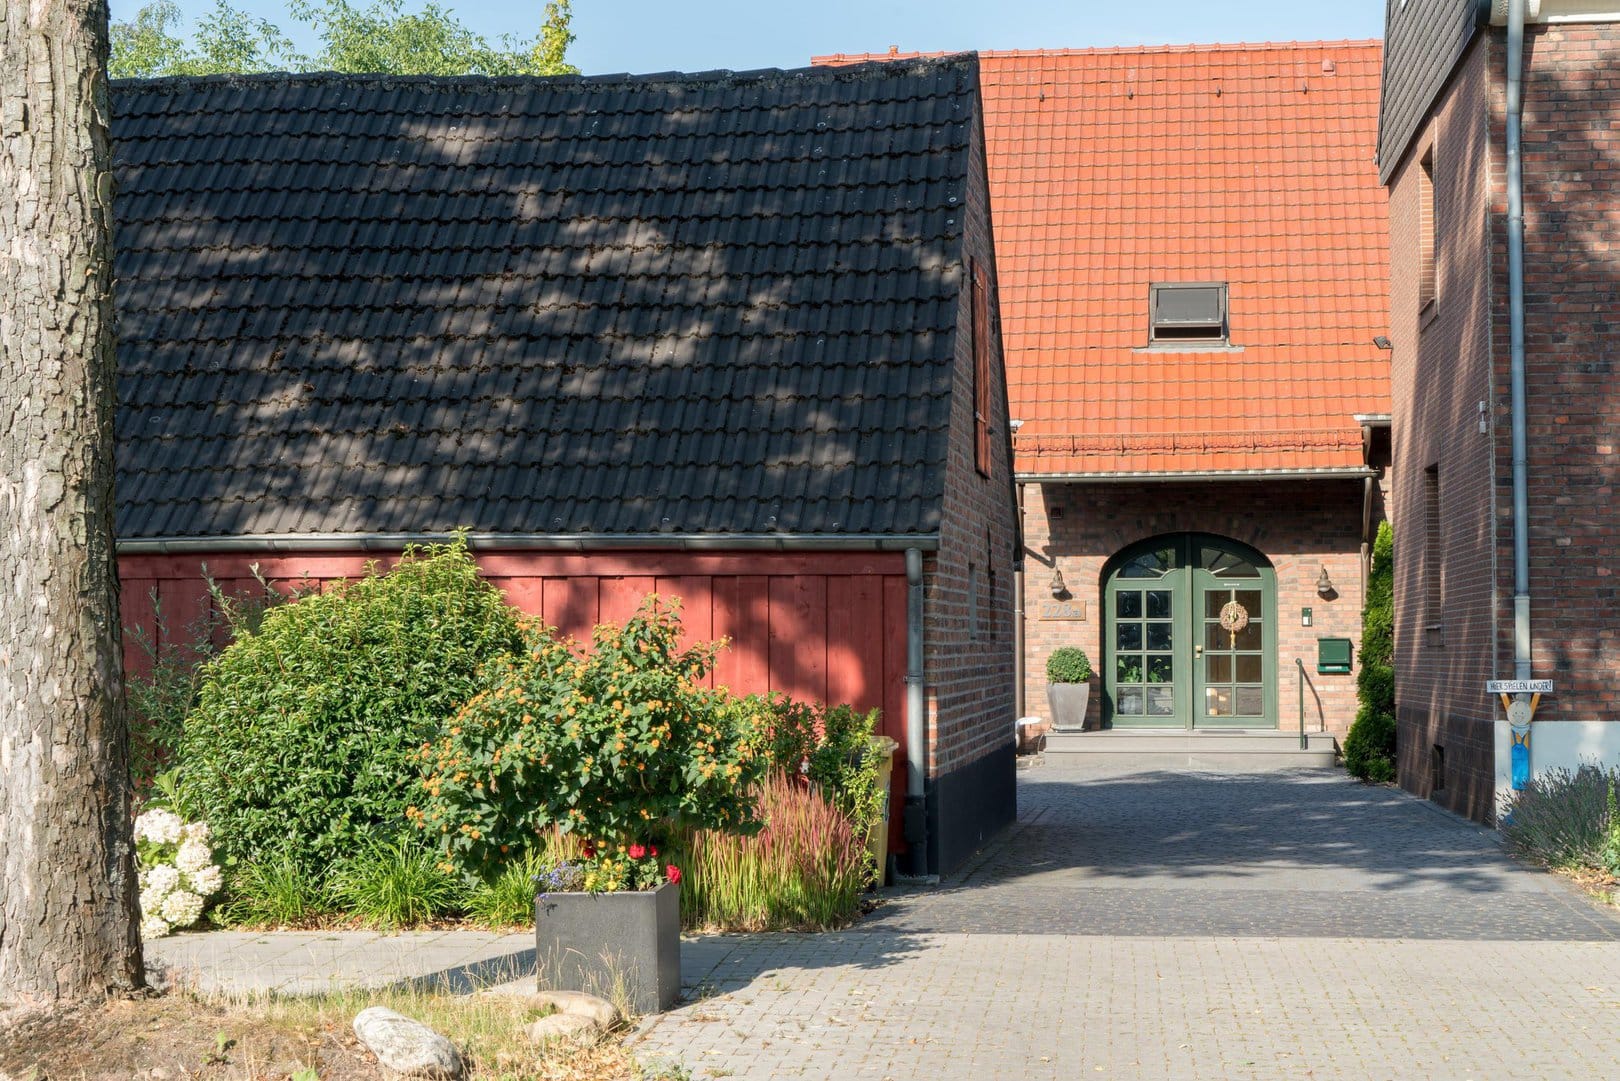 Durch die Einfahrt sieht man im Hintergrund das Gästehaus aus Ziegelsteinen mit orangenem Dach und grüner Eingangstür.